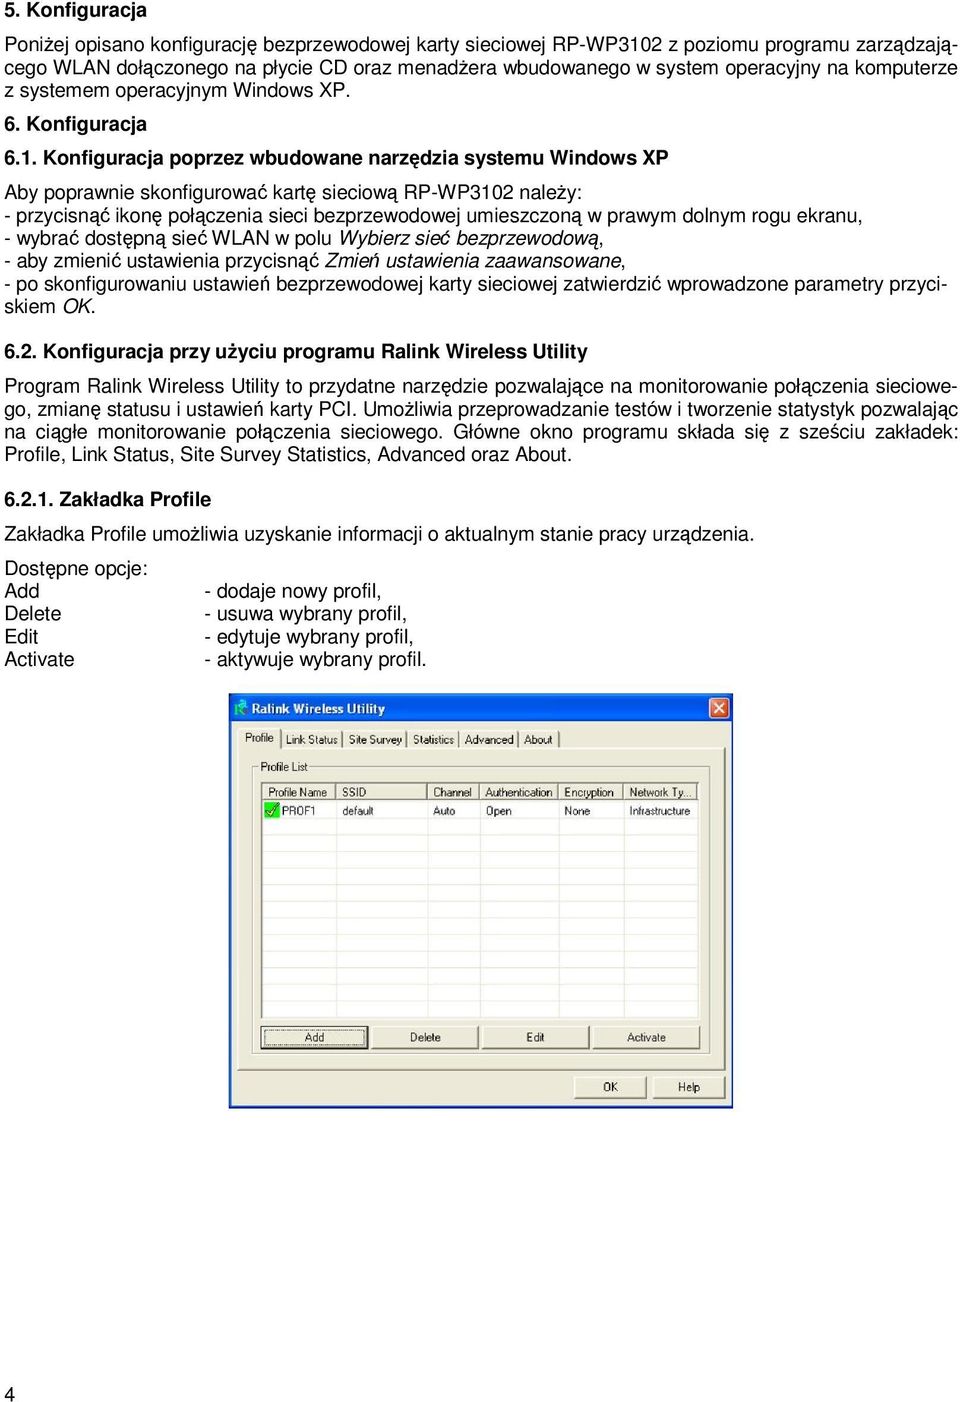 Konfiguracja poprzez wbudowane narzędzia systemu Windows XP Aby poprawnie skonfigurować kartę sieciową RP-WP3102 należy: - przycisnąć ikonę połączenia sieci bezprzewodowej umieszczoną w prawym dolnym